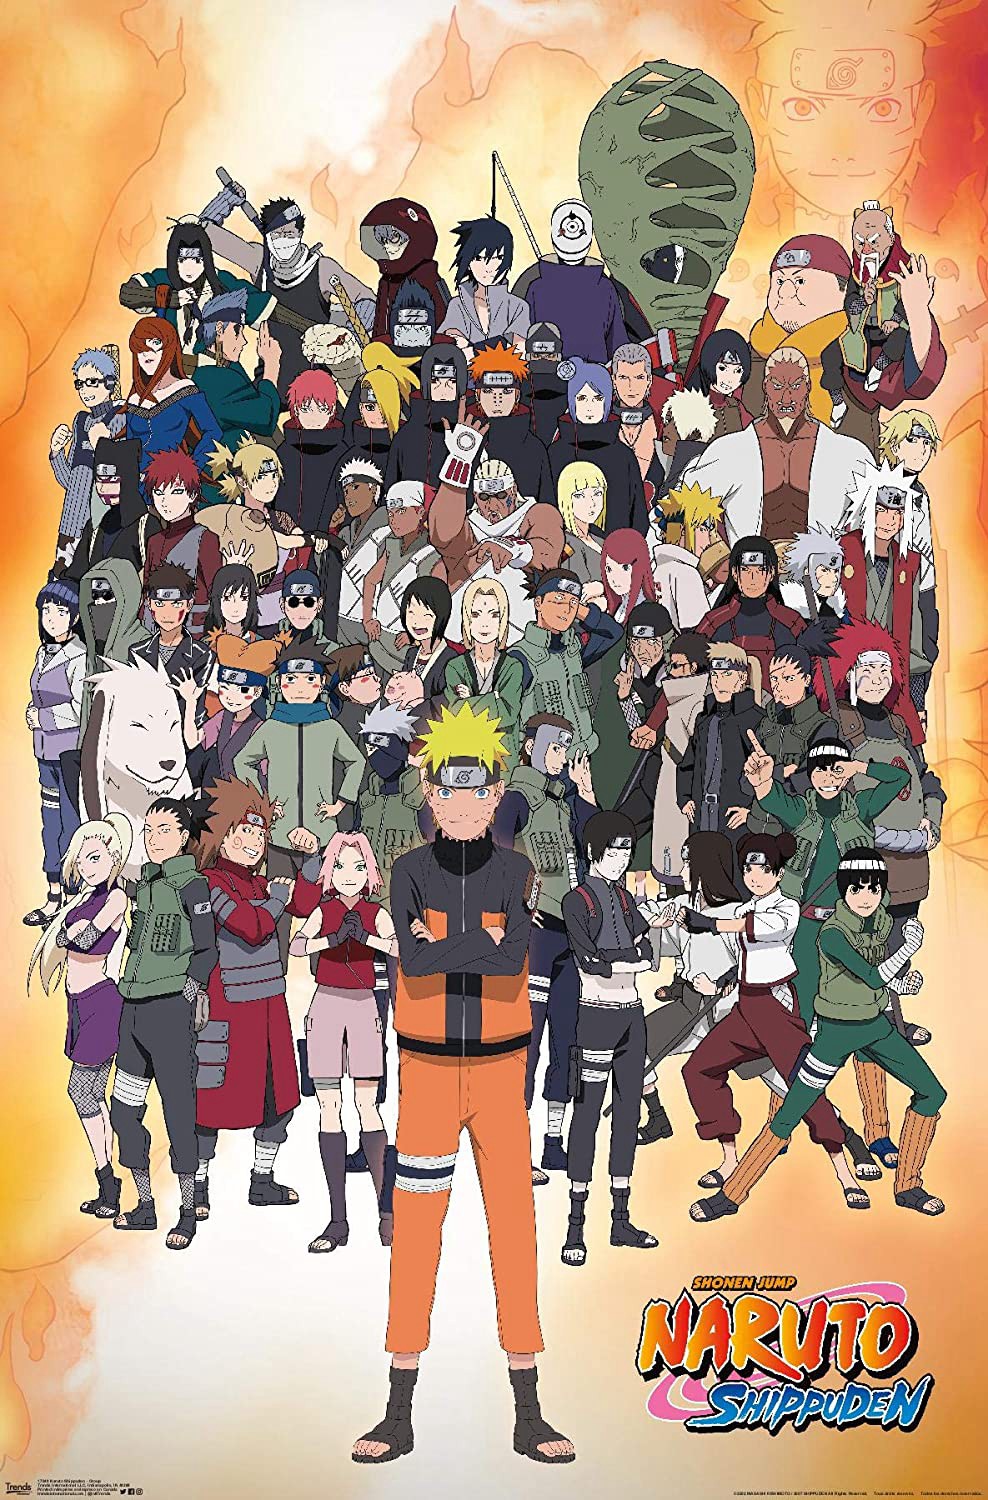 Naruto Shippuden - Naruto Shippuden (2007)